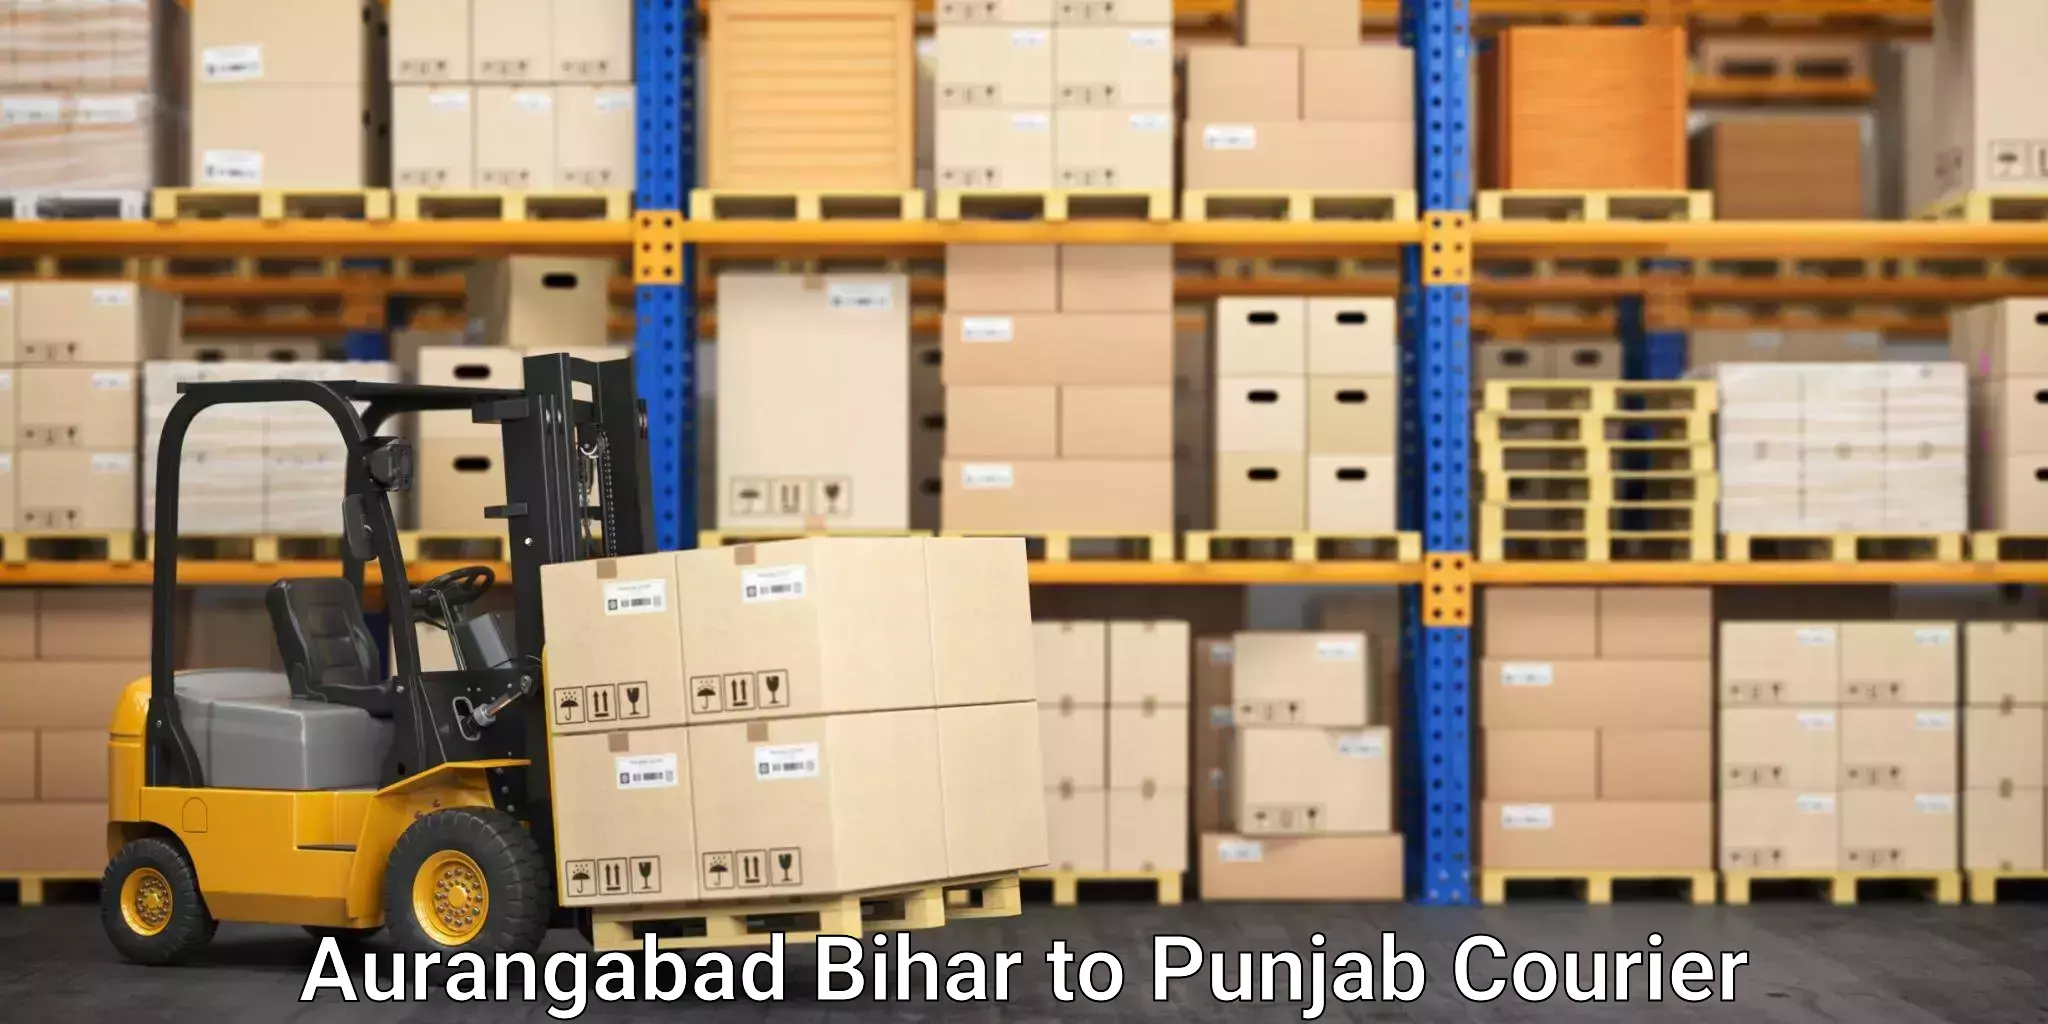 Reliable movers in Aurangabad Bihar to Zira